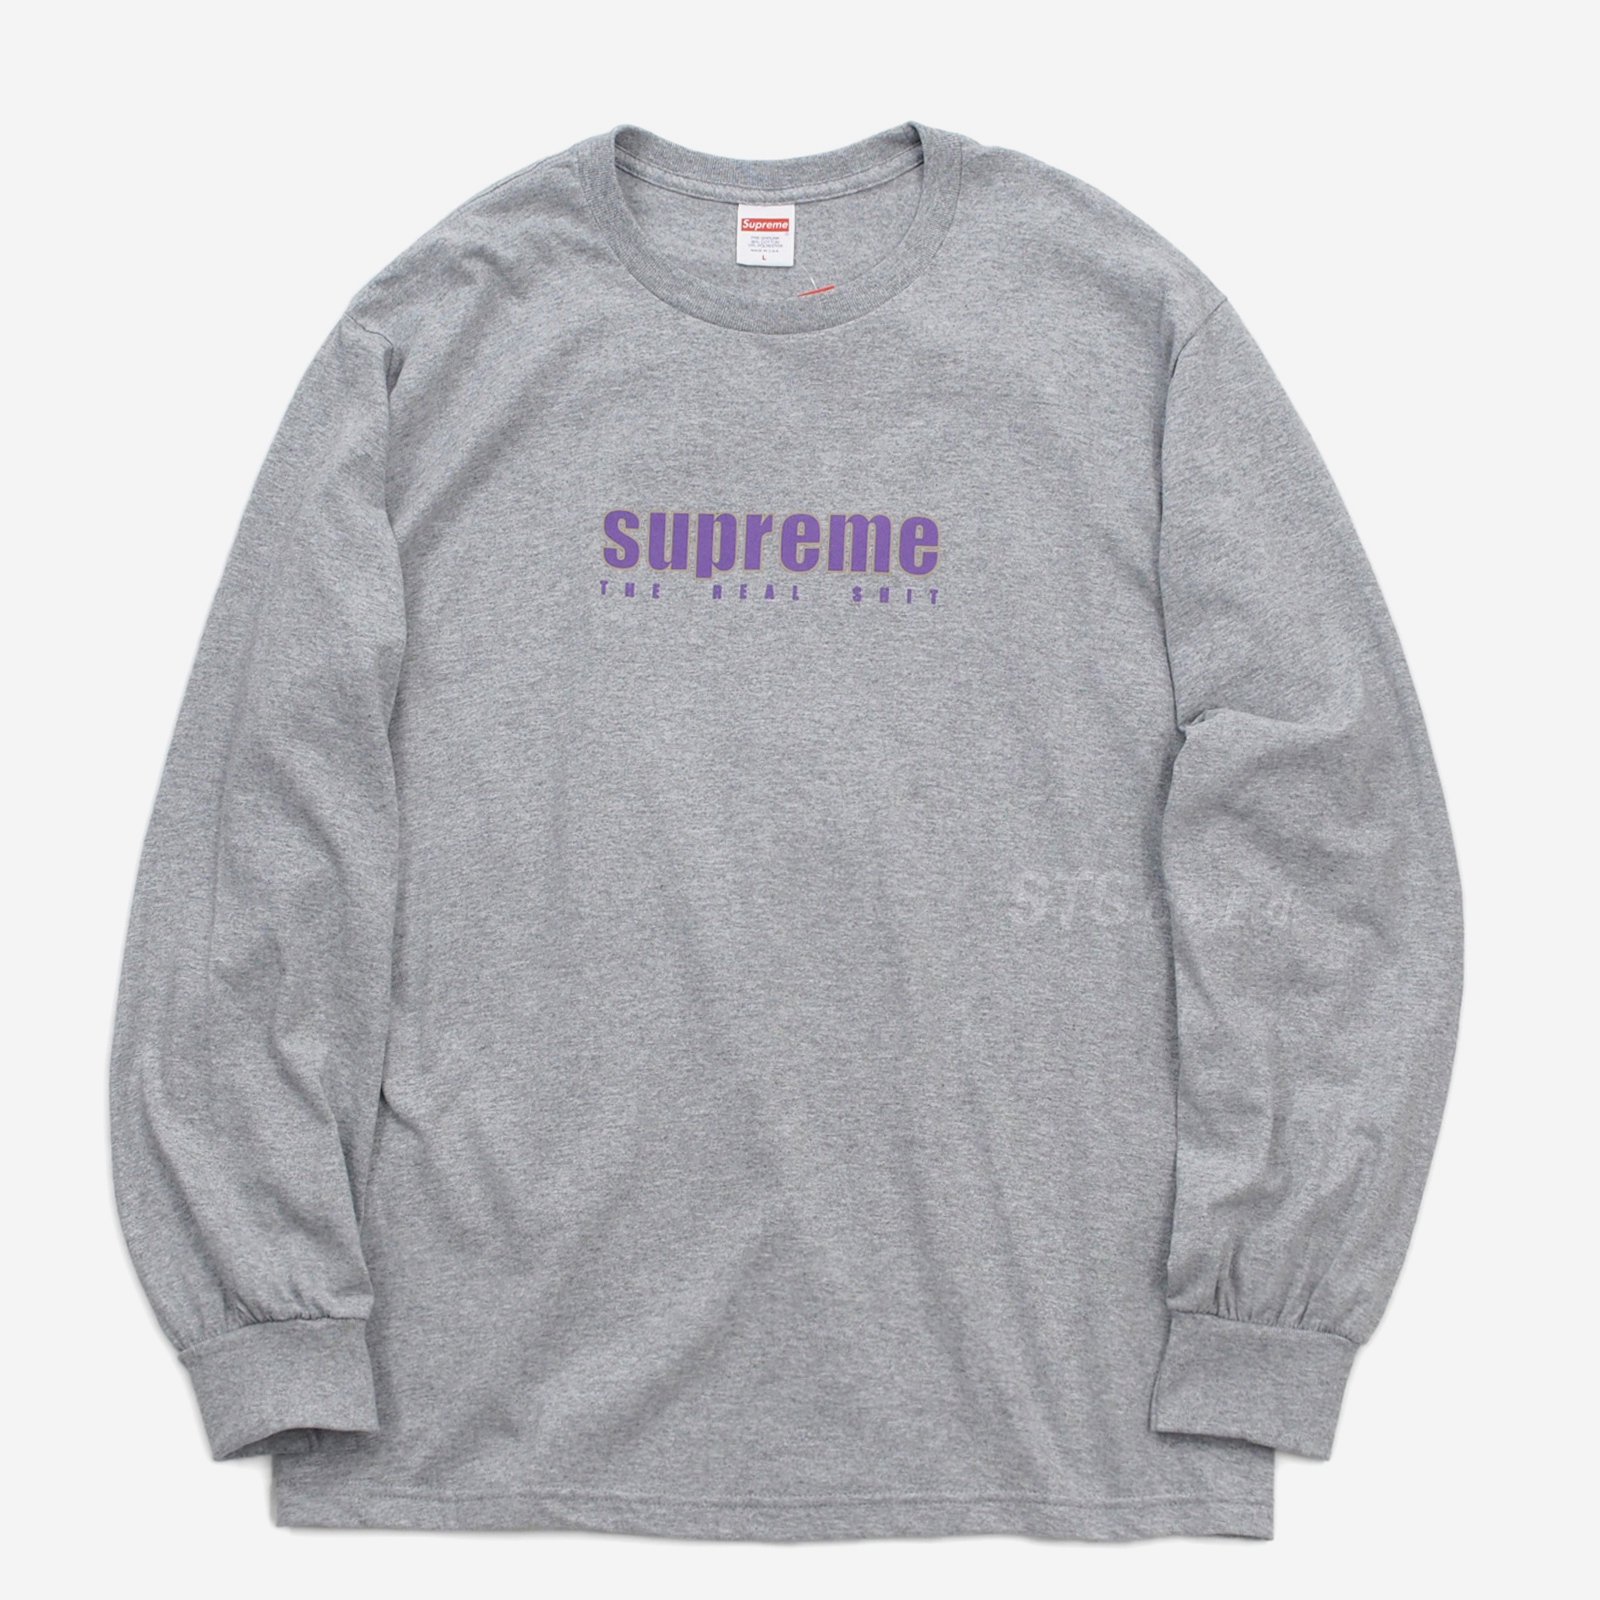 Supreme - The Real Shit L/S Tee - UG.SHAFT